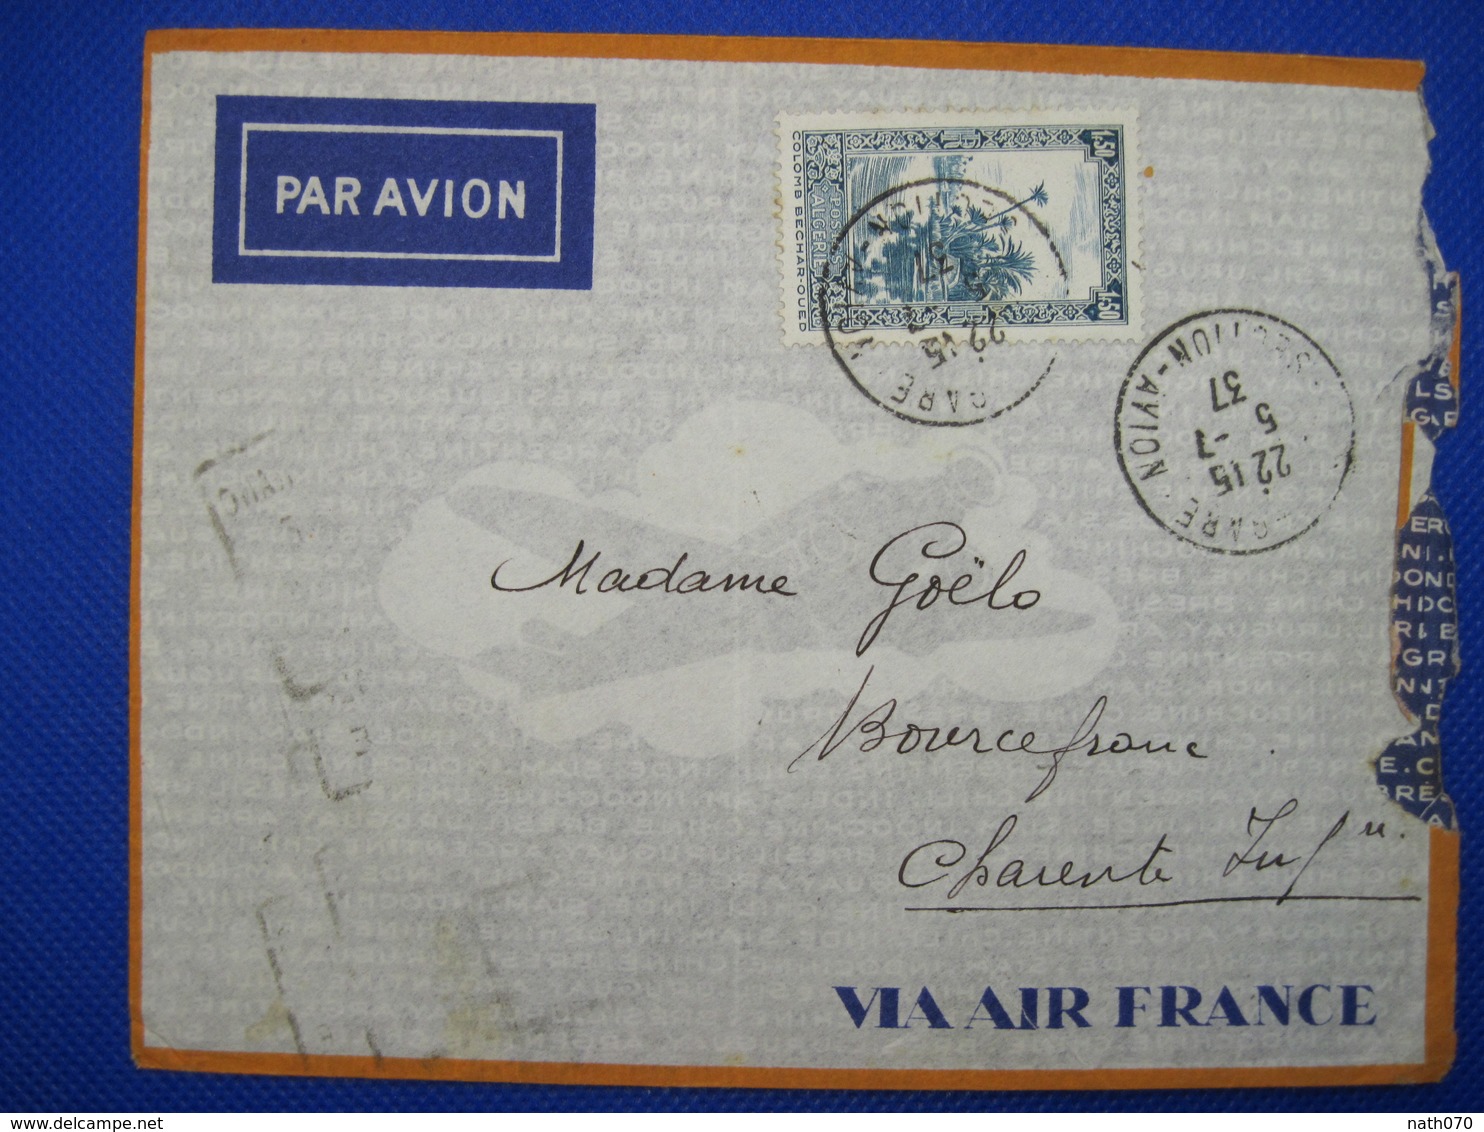 Algérie France 1937 BOURCEFRANC Par Avion Air Mail Lettre Enveloppe Cover Colonie PA 1,50f Seul Section - Briefe U. Dokumente